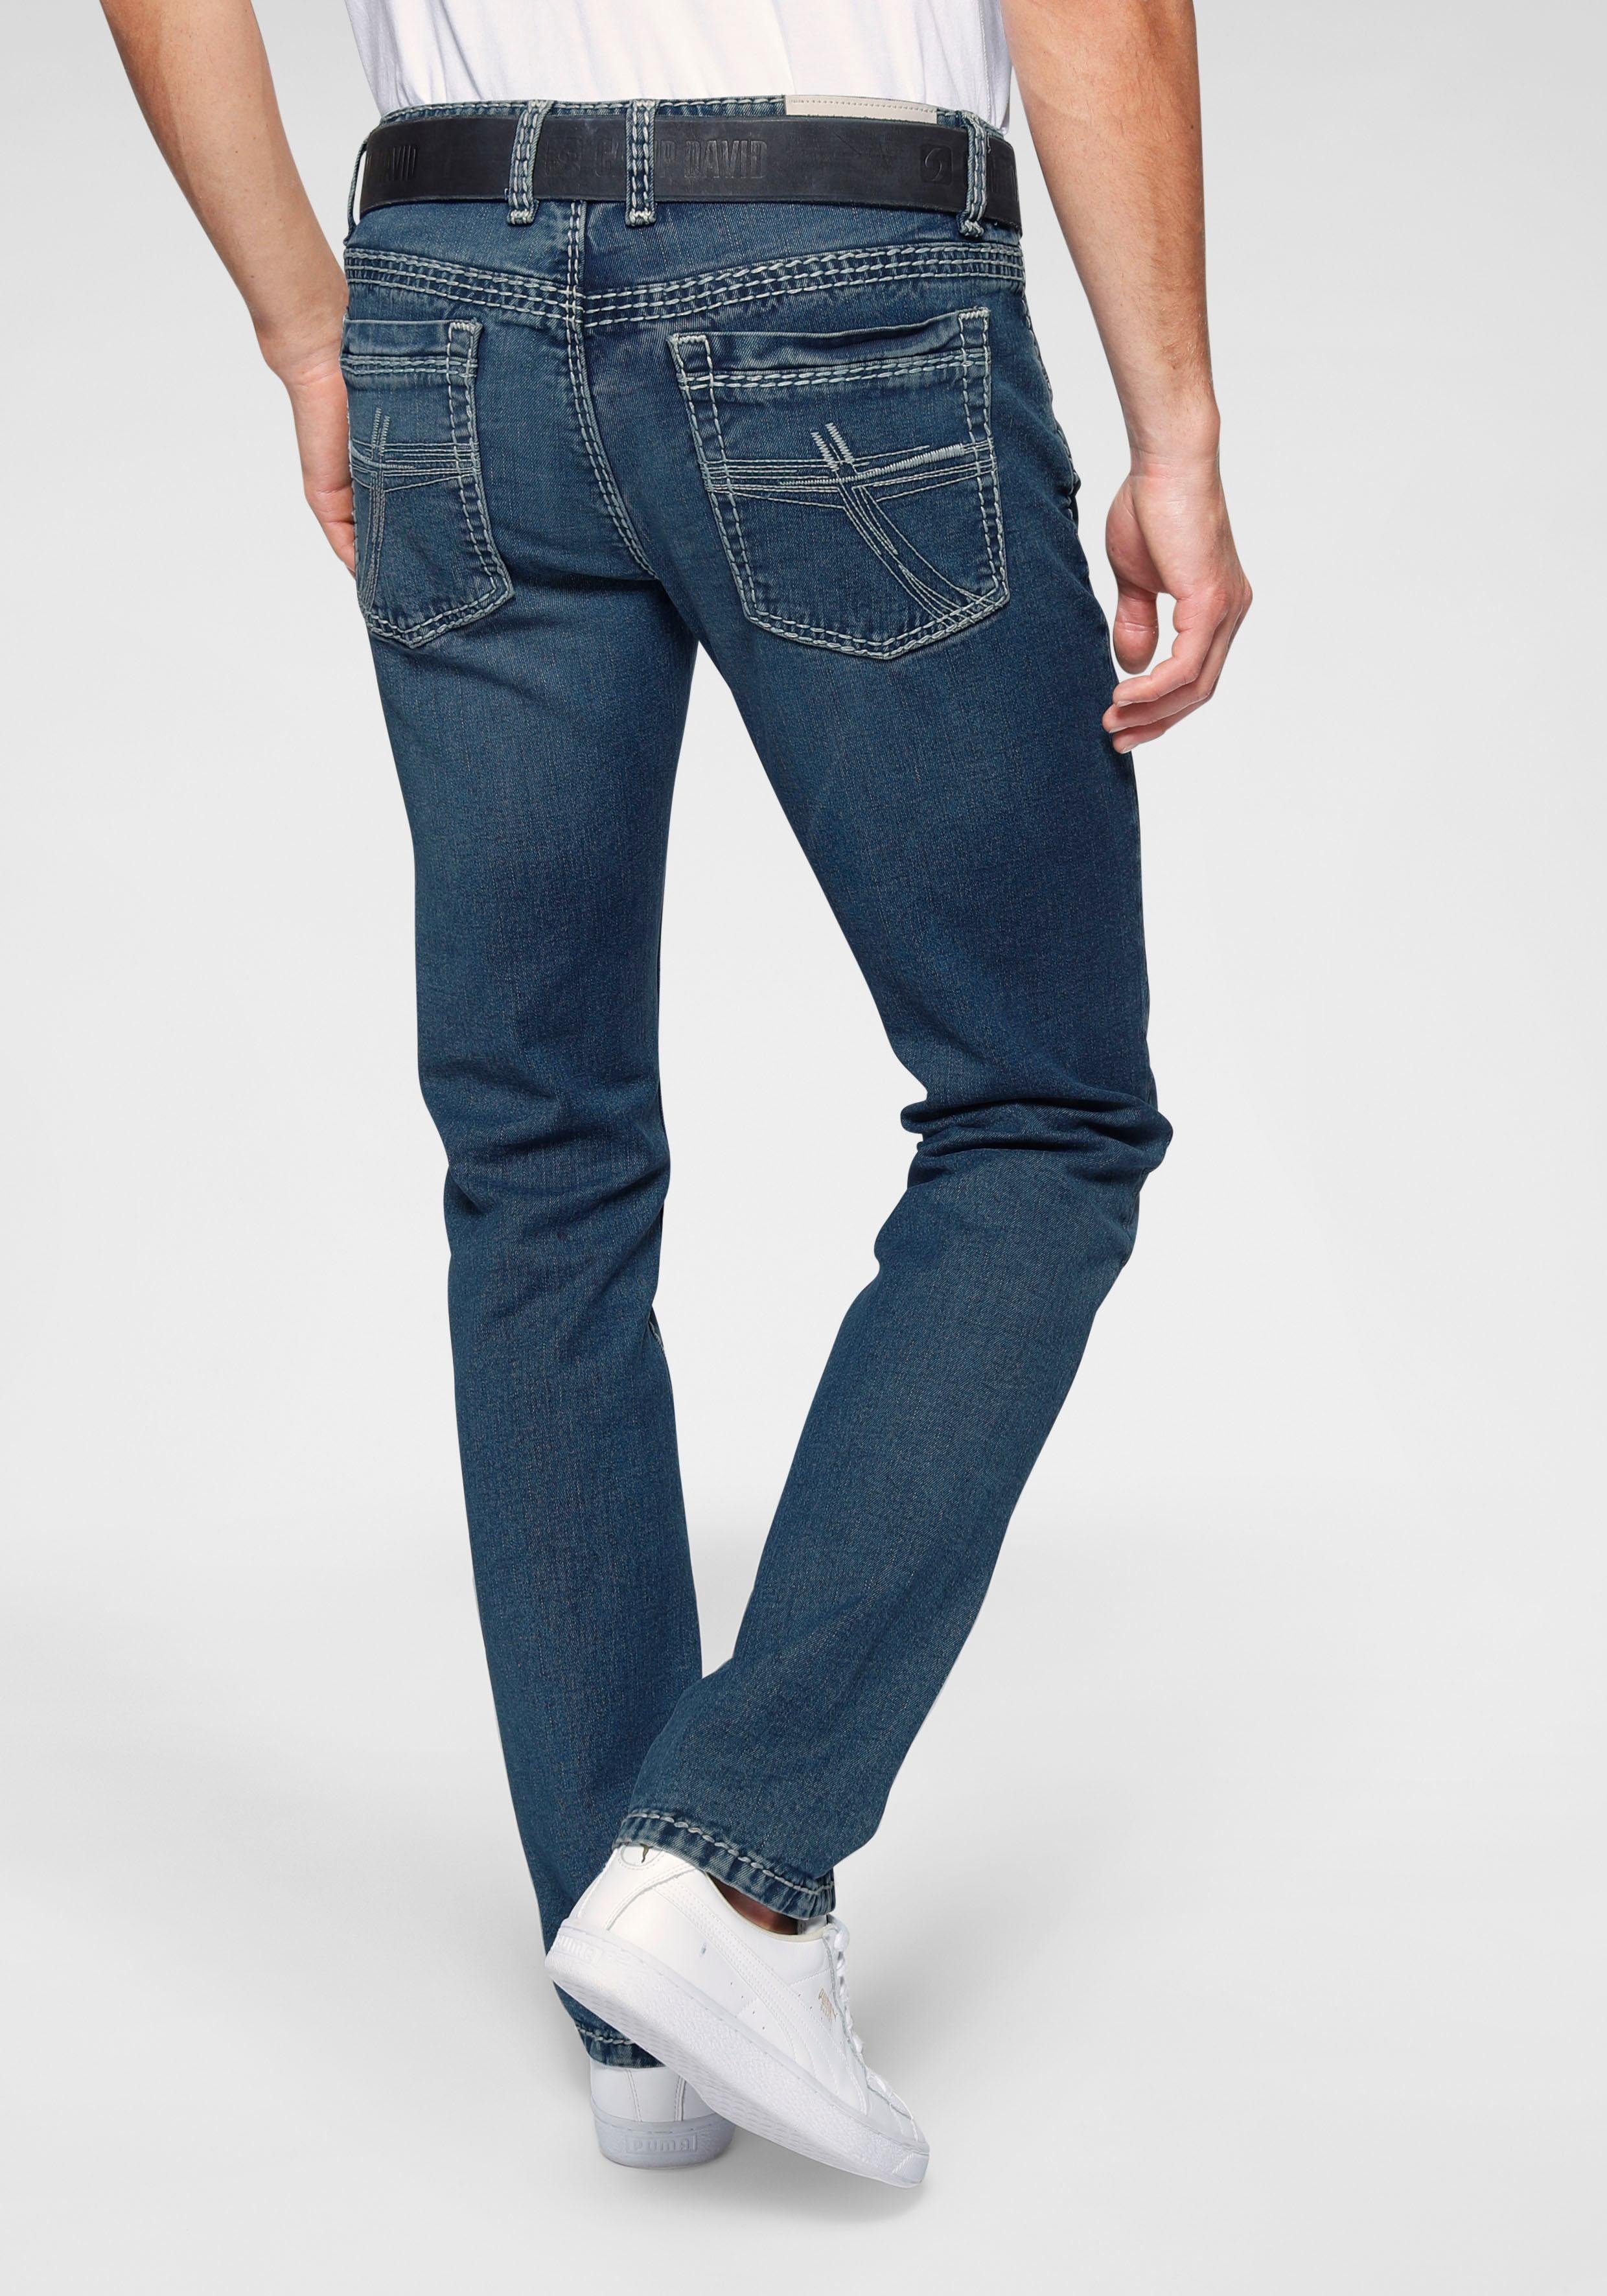 CAMP DAVID 5-Pocket-Jeans »RO:BI:S622« online kaufen | OTTO